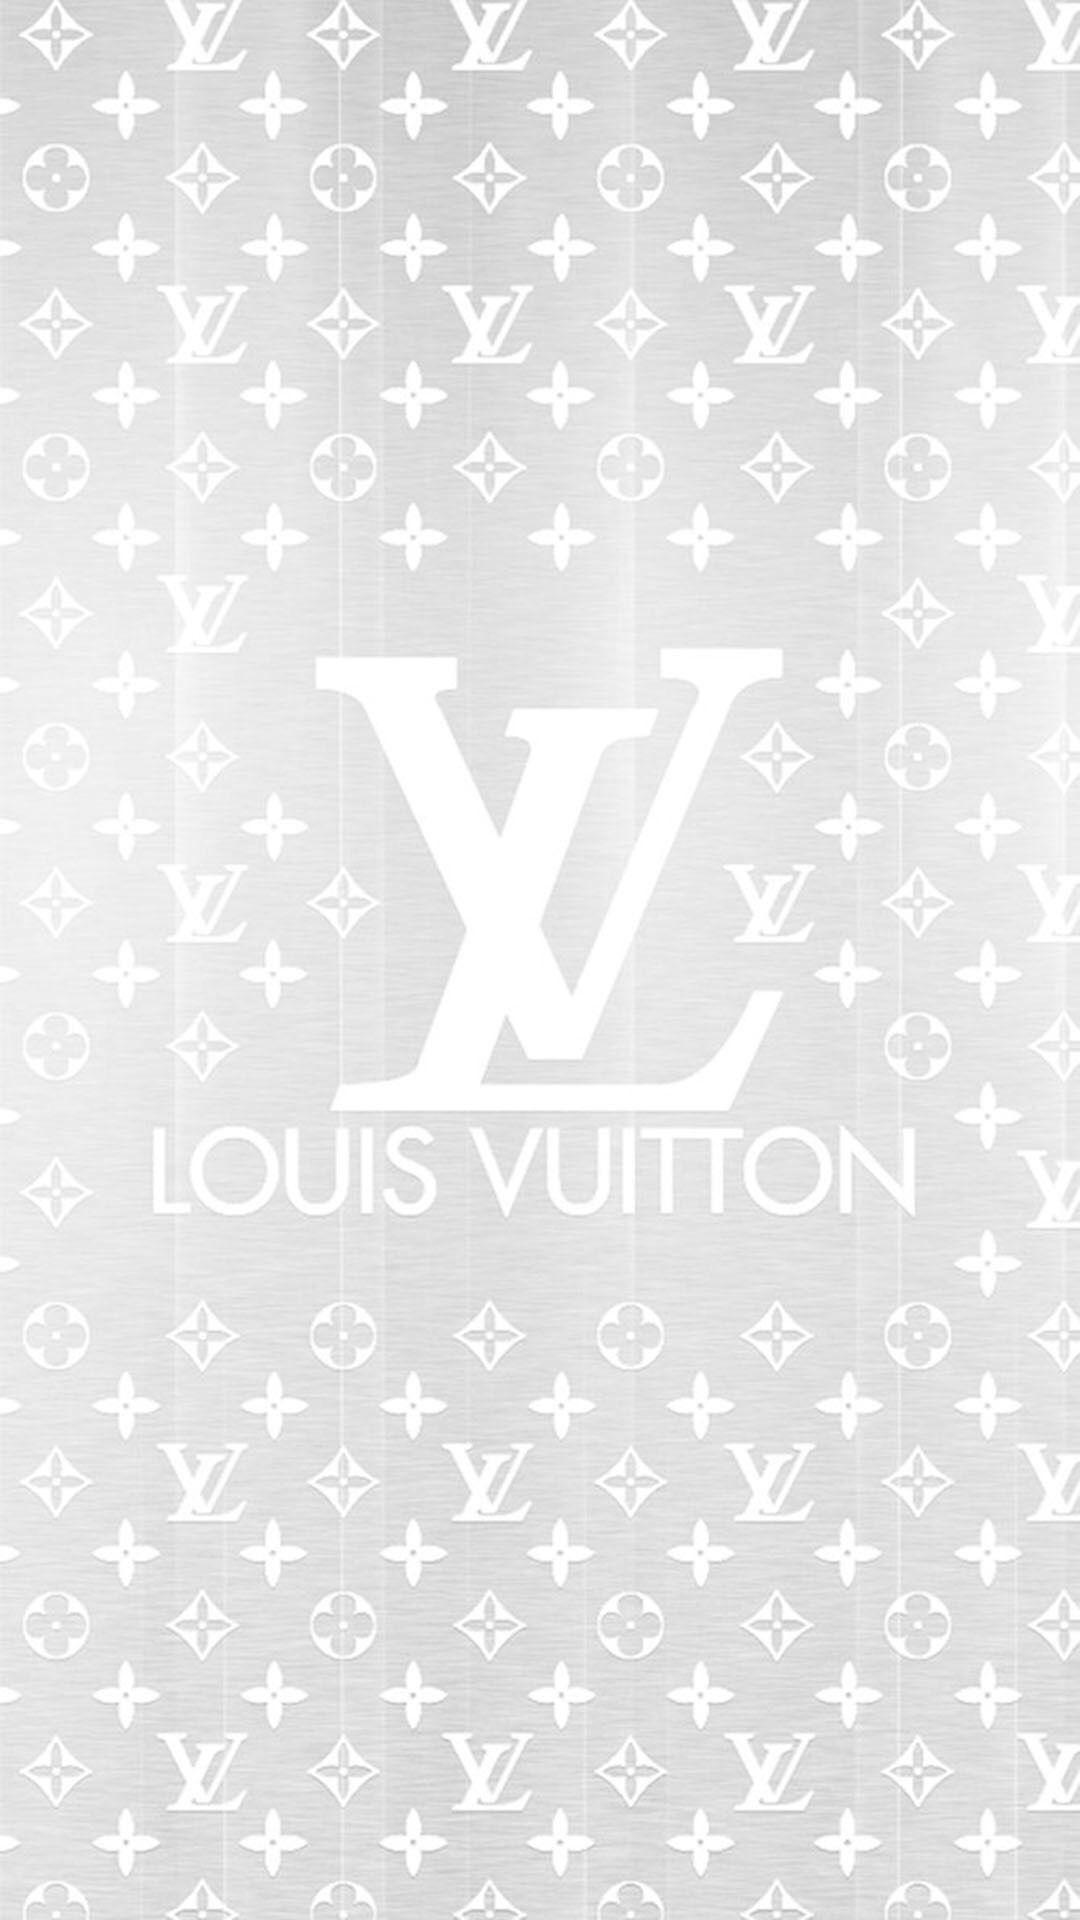 Louis Vuitton hình nền thẩm mỹ sẽ khiến bạn phát cuồng với những thiết kế đẹp mắt, tinh tế và đầy cá tính. Bạn sẽ không thể cưỡng lại được sức hút của những hình nền Louis Vuitton thật hoàn hảo khiến cho điện thoại hoặc máy tính của bạn trở nên nổi bật và thể hiện được phong cách của riêng bạn.